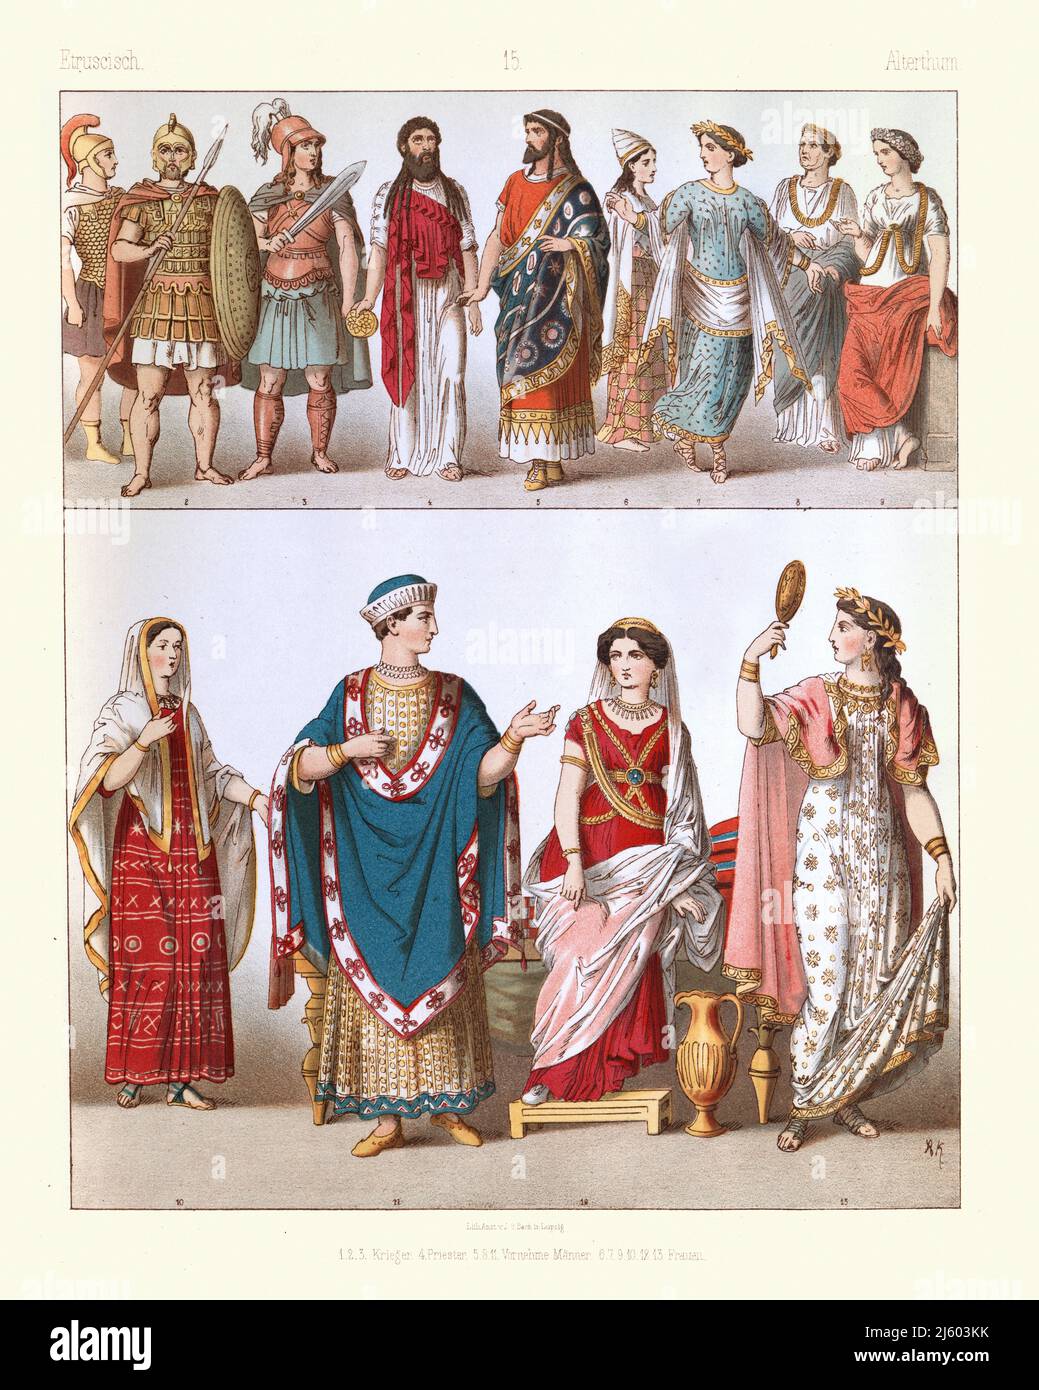 Etruskische Kostüme und Mode, Antike Geschichte, Antike, Krieger, Soldat, Priester, Edler Mann und Frau Stockfoto